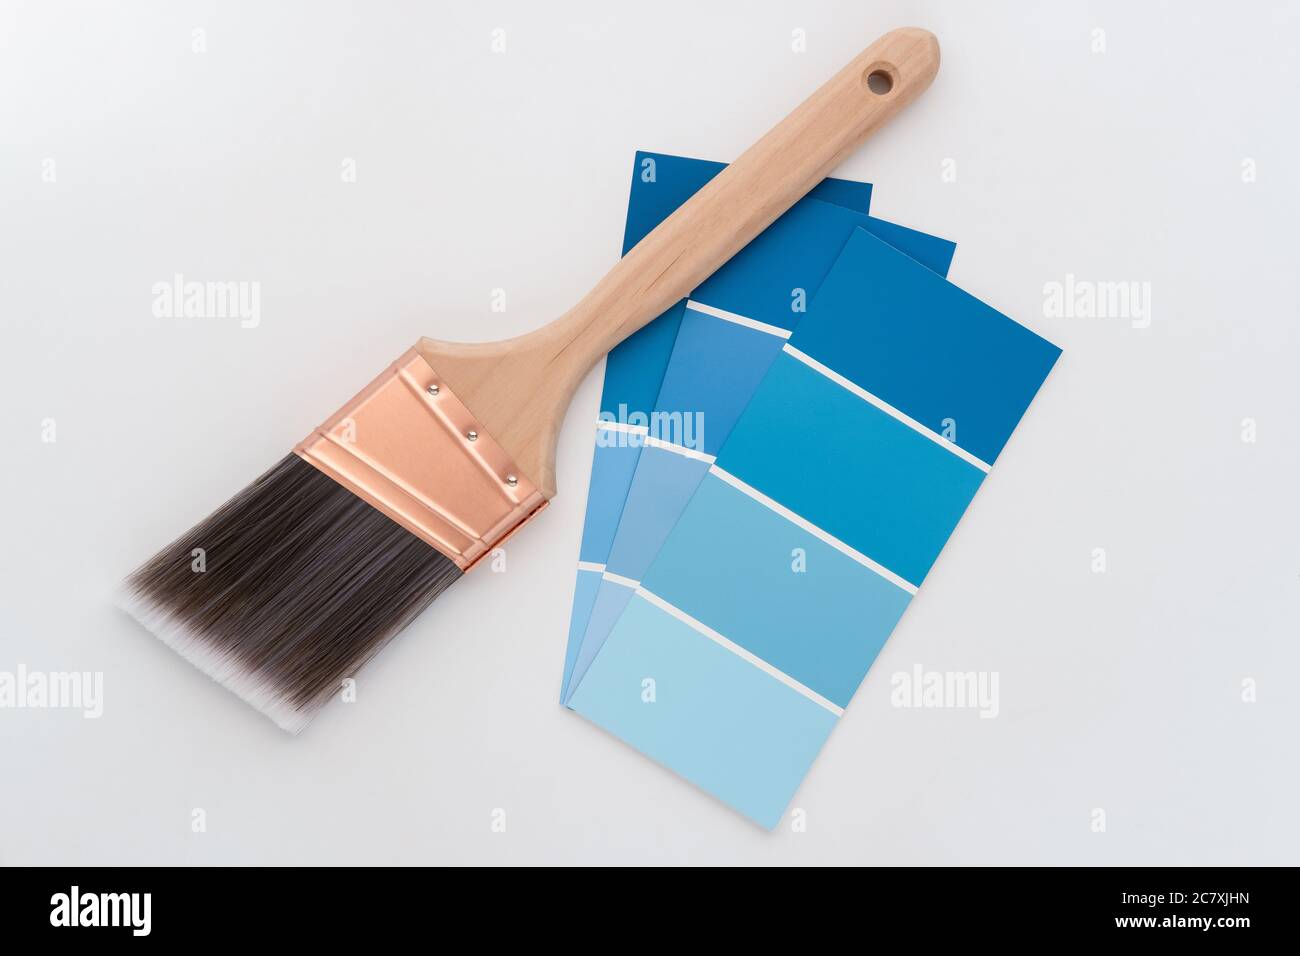 Foto von professionellen Pinsel mit konischen Rand und malen Beispielkarten auf weißem Hintergrund Stockfoto